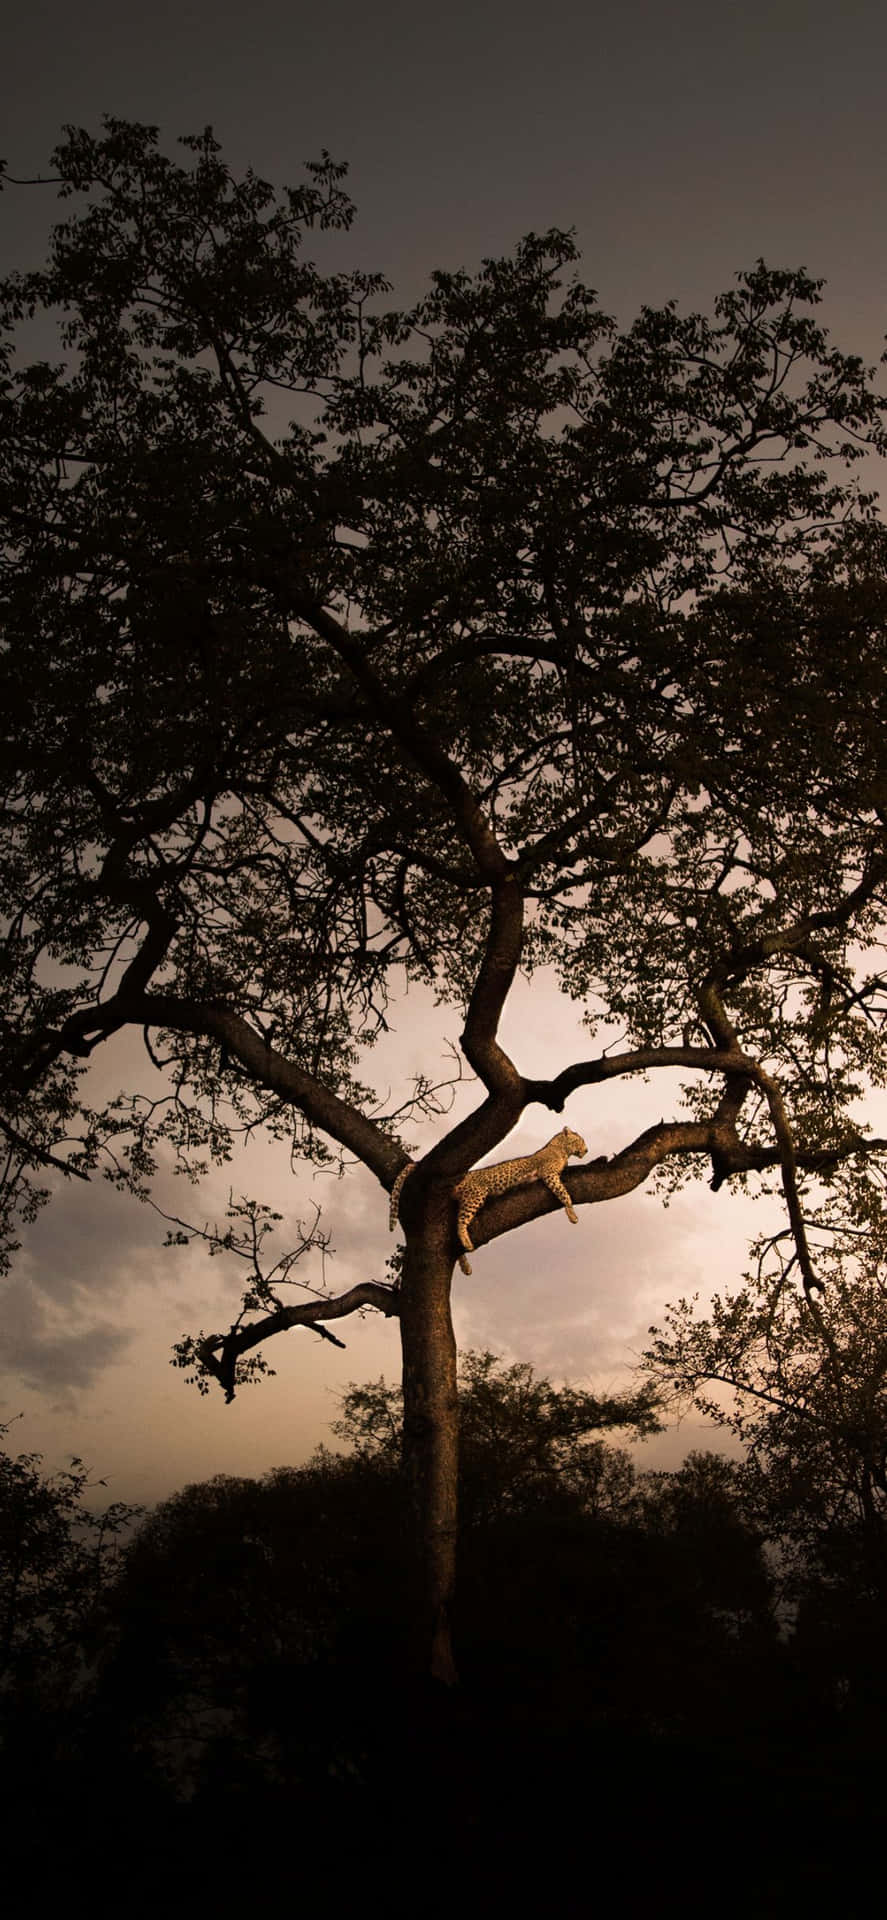 a giraffe standing under a tree